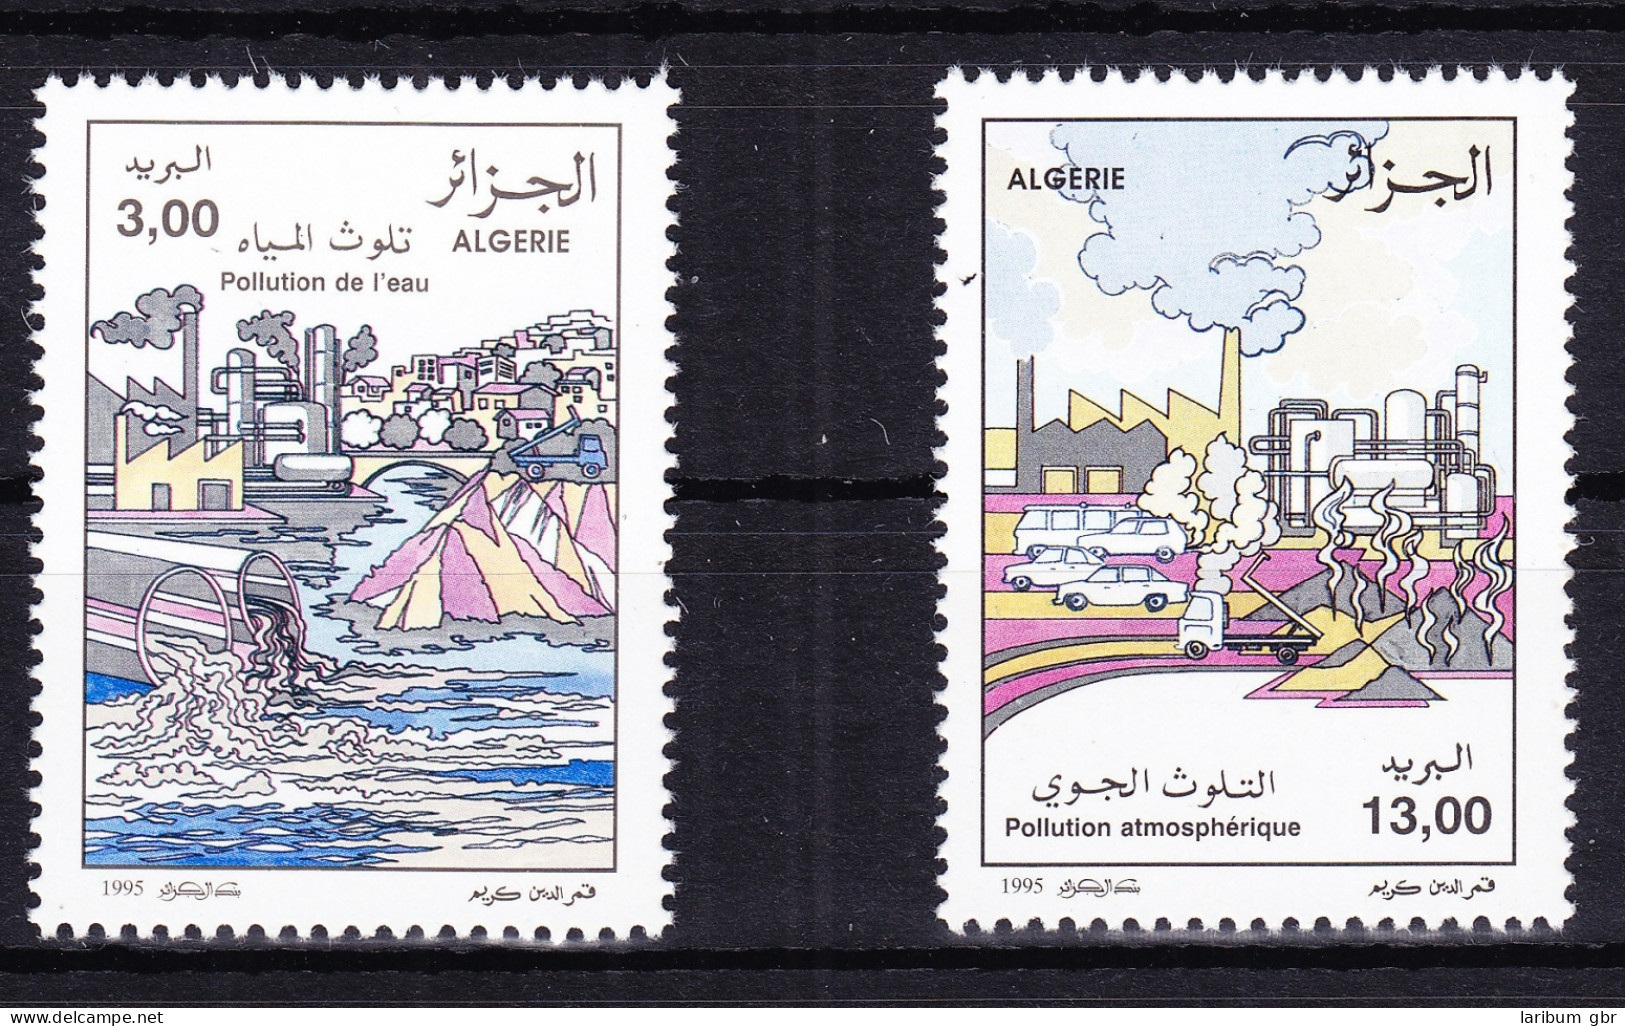 Algerien 1137-1138 Postfrisch Umweltschutz, MNH #RB799 - Algerien (1962-...)